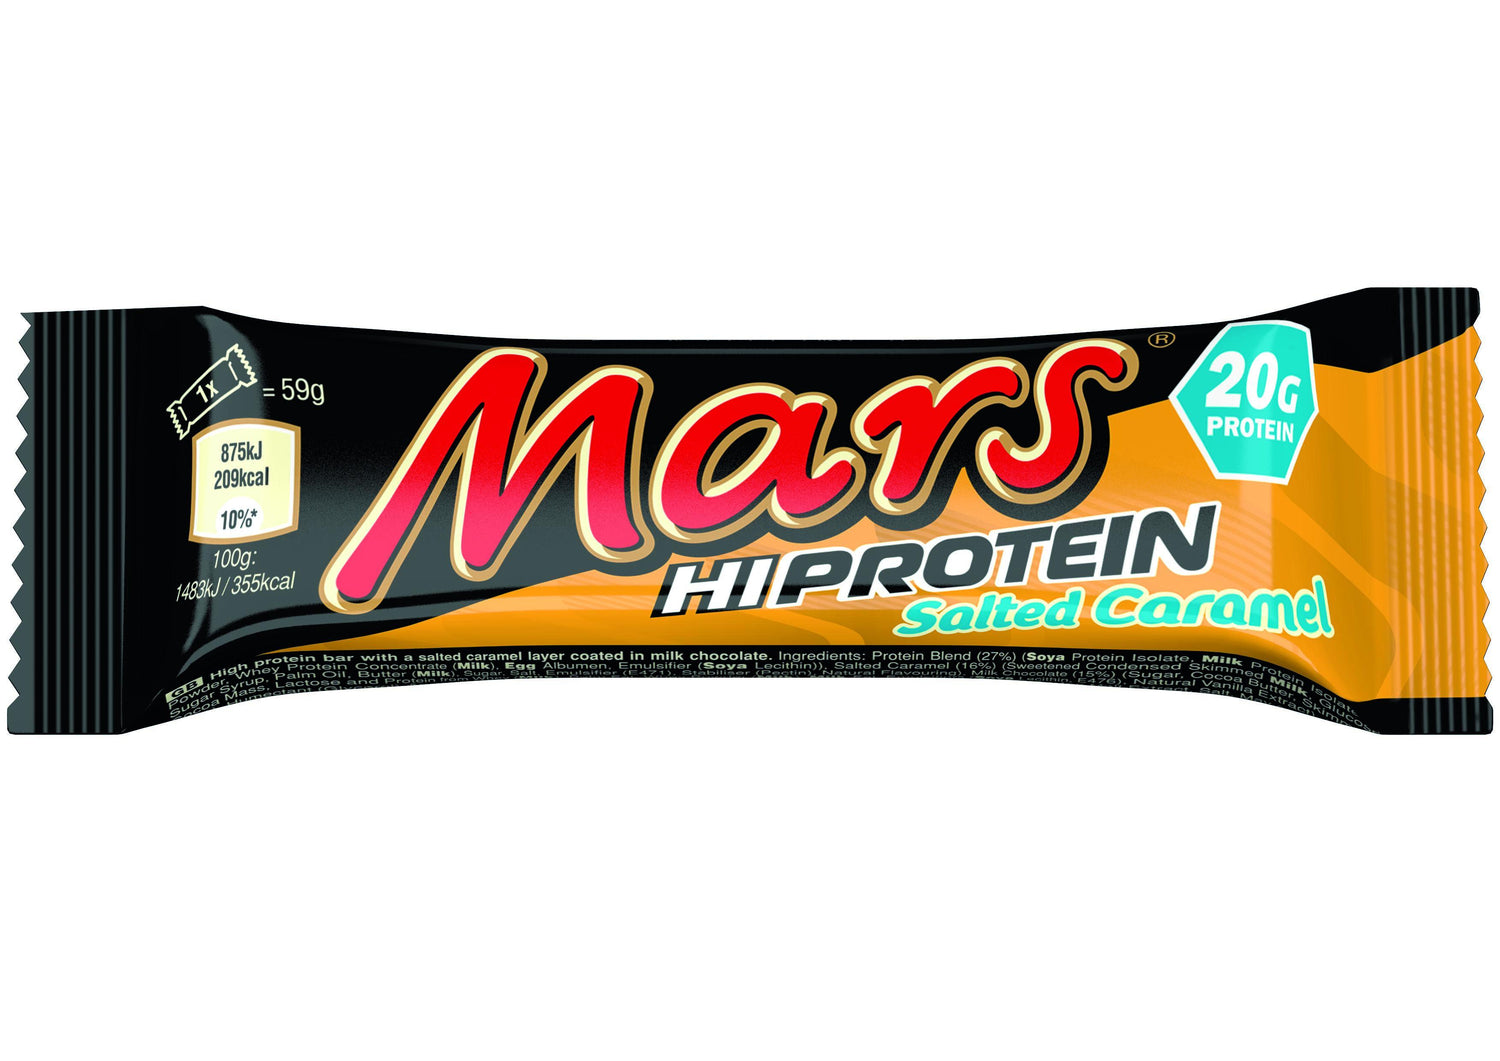 Mars Hi Protein Bars 1 x 59g - Sālīta karamele - theskinnyfoodco